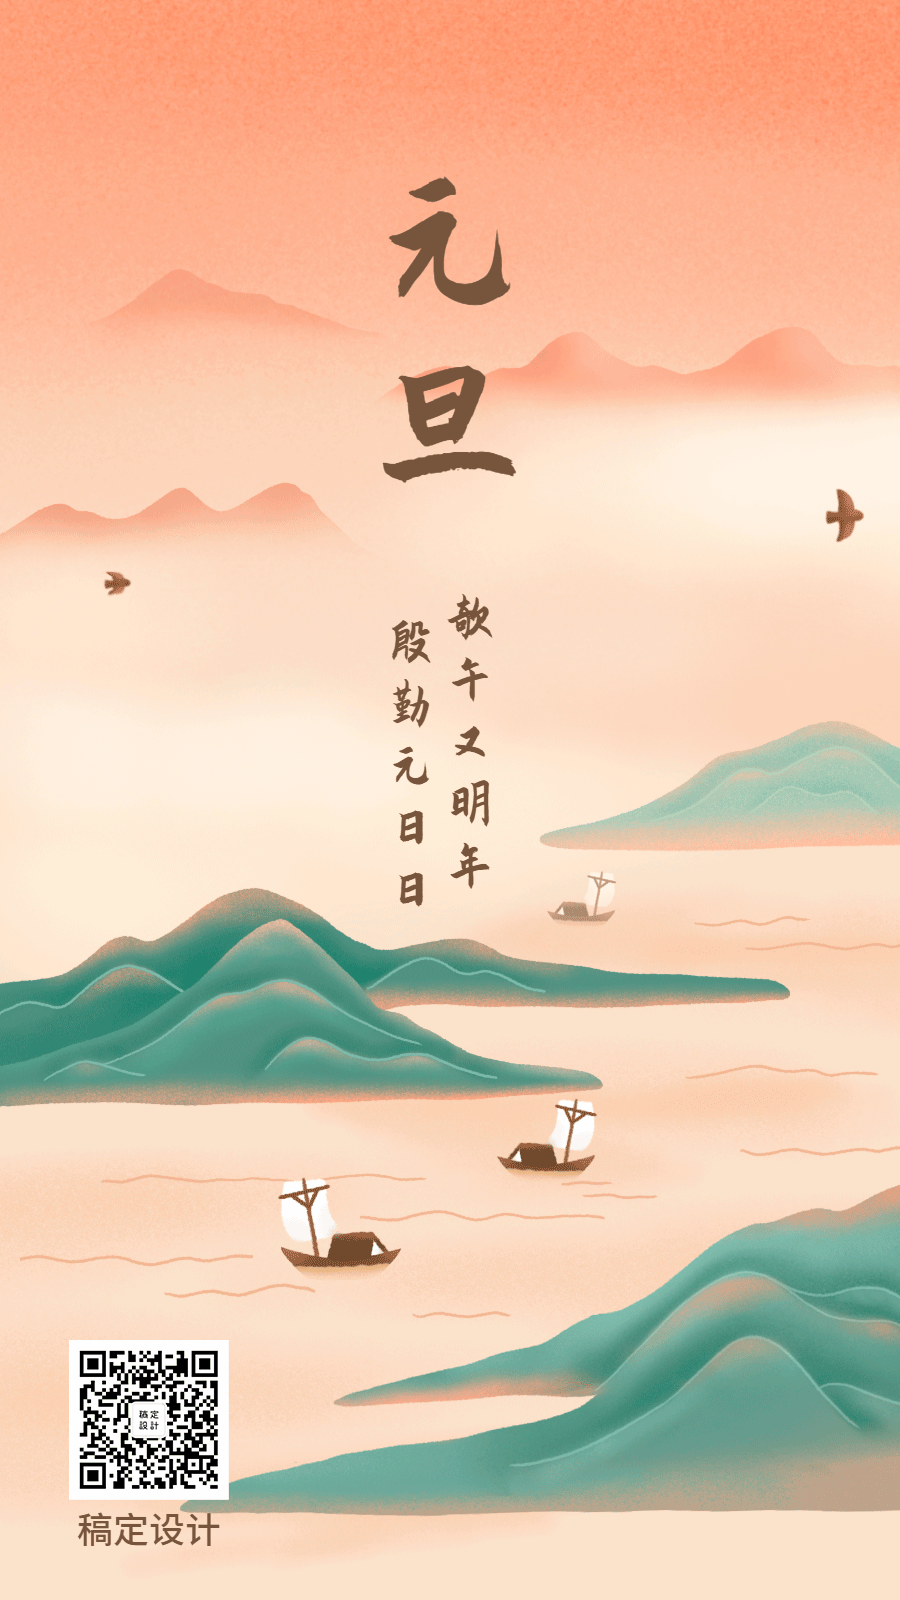 元旦中国风手绘插画创意动态海报